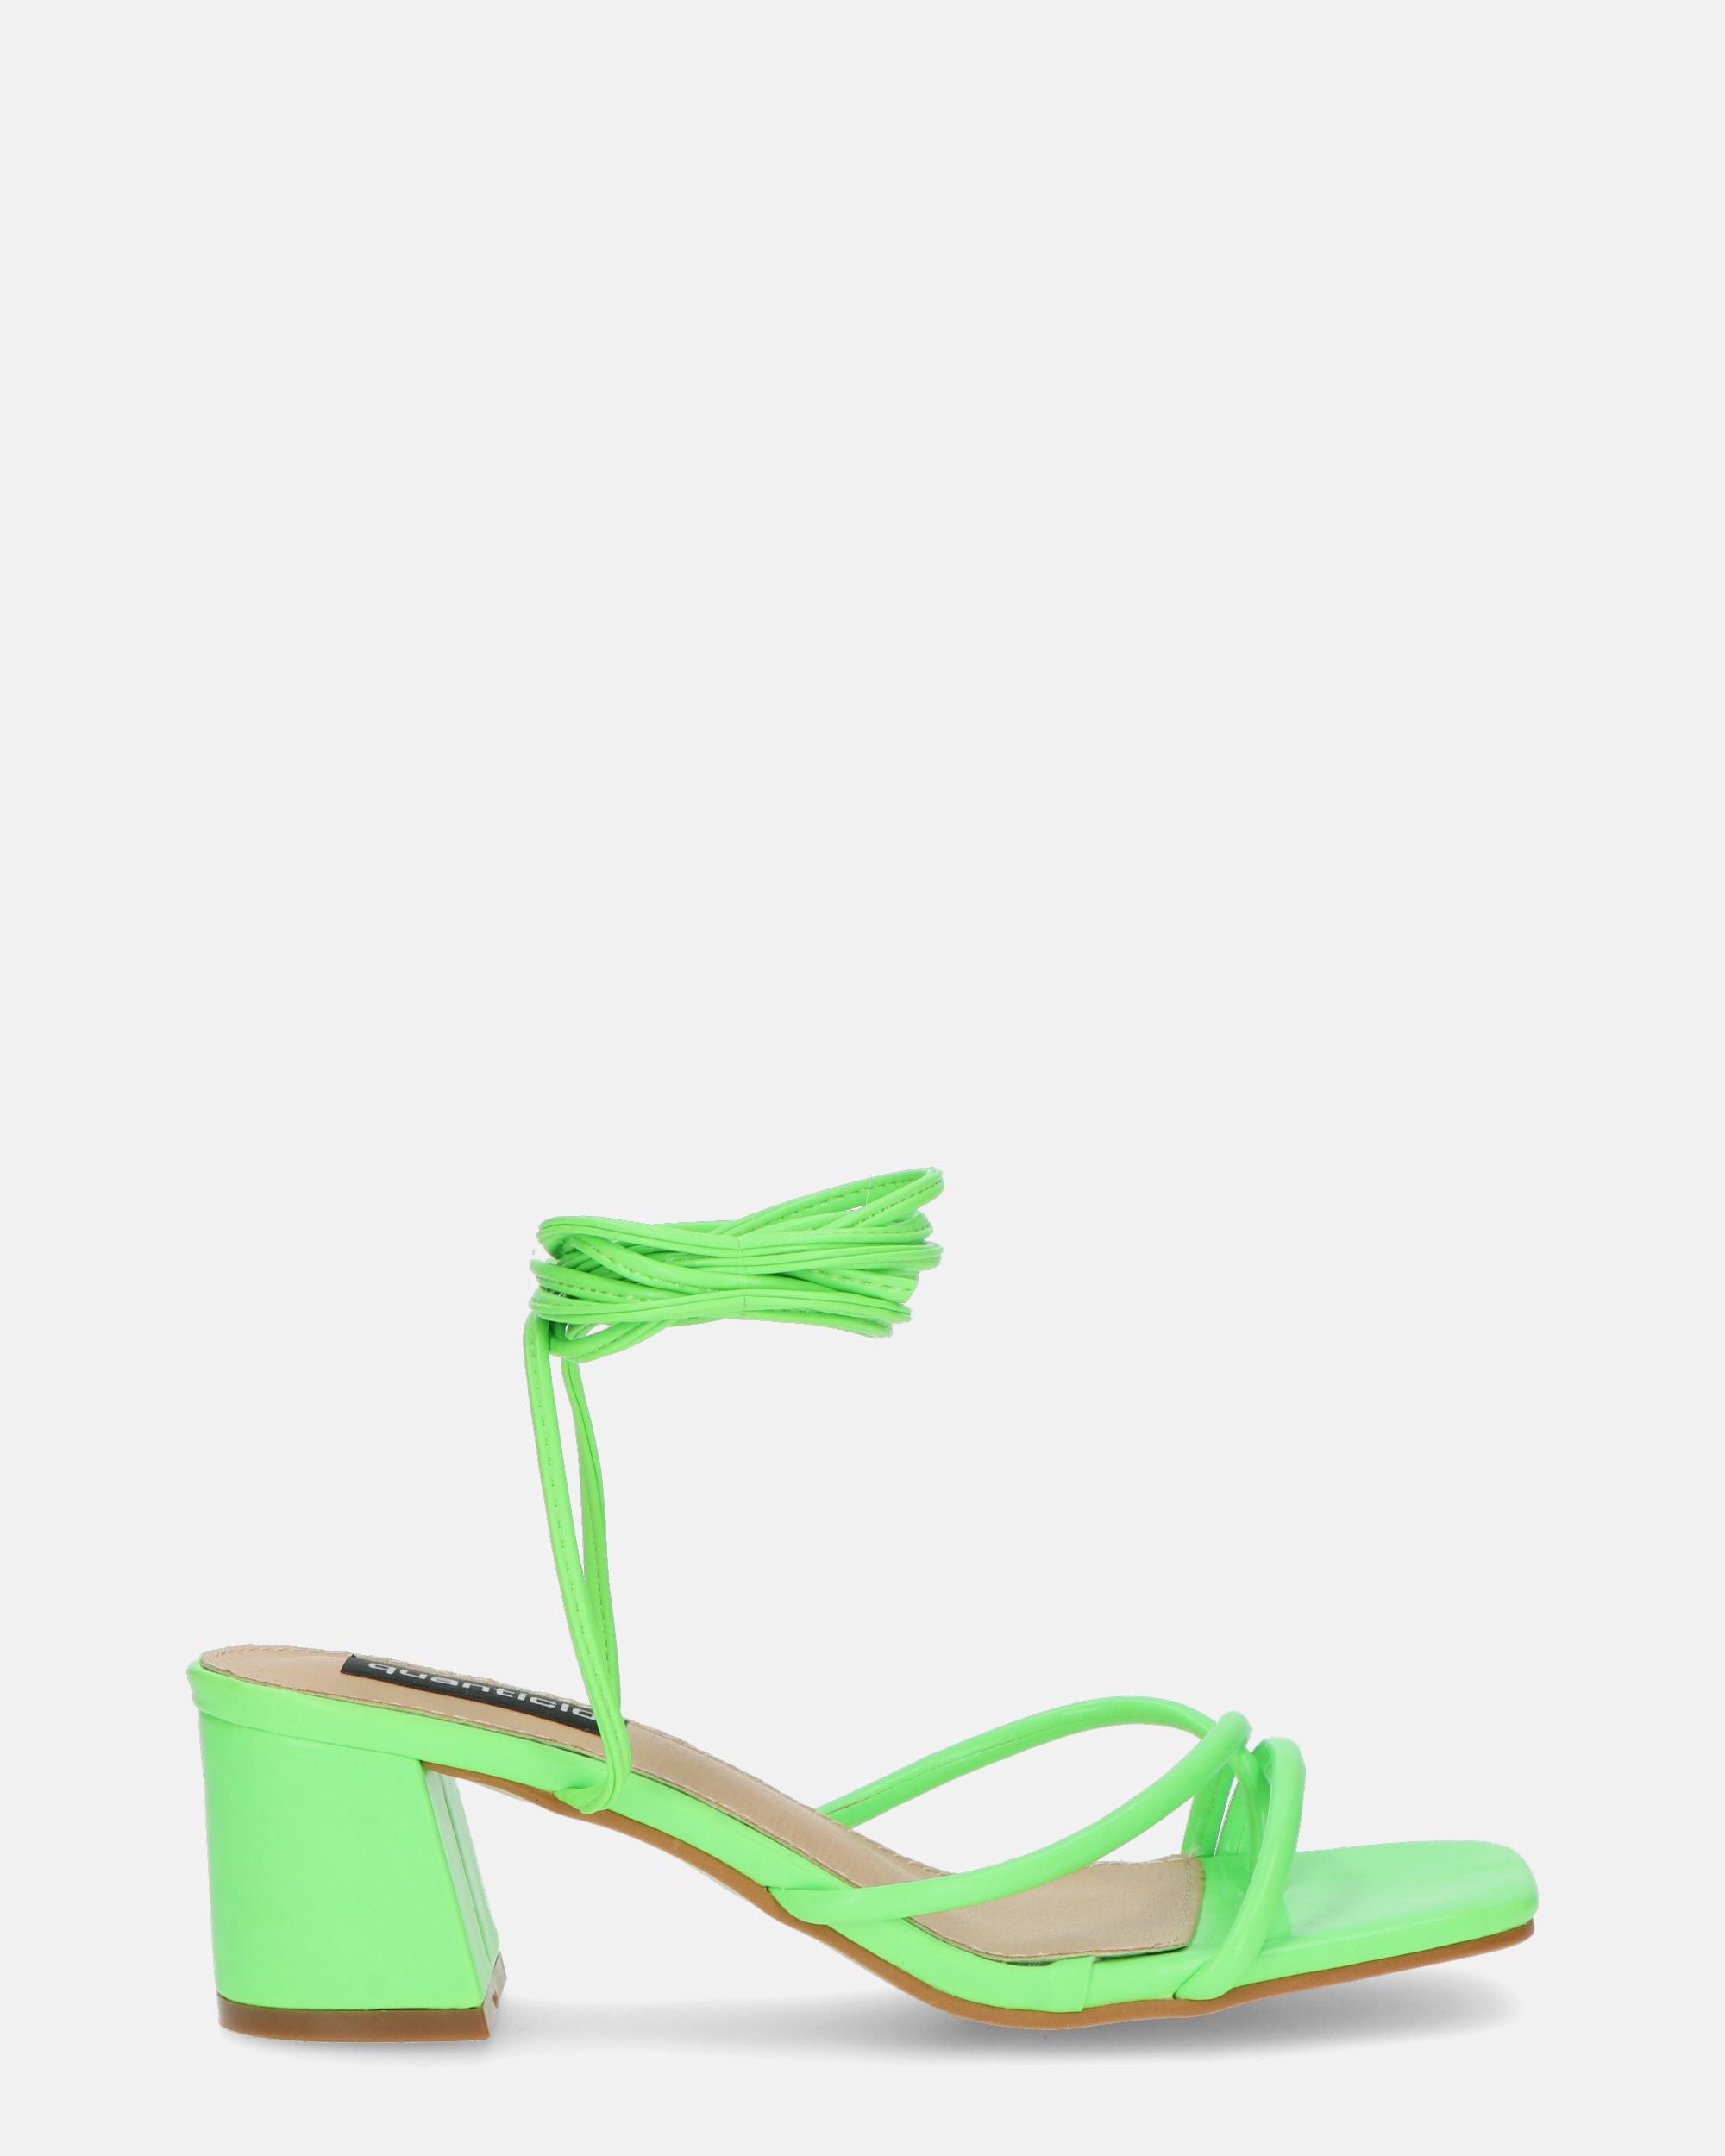 HOARA - heeled sandals in green PU